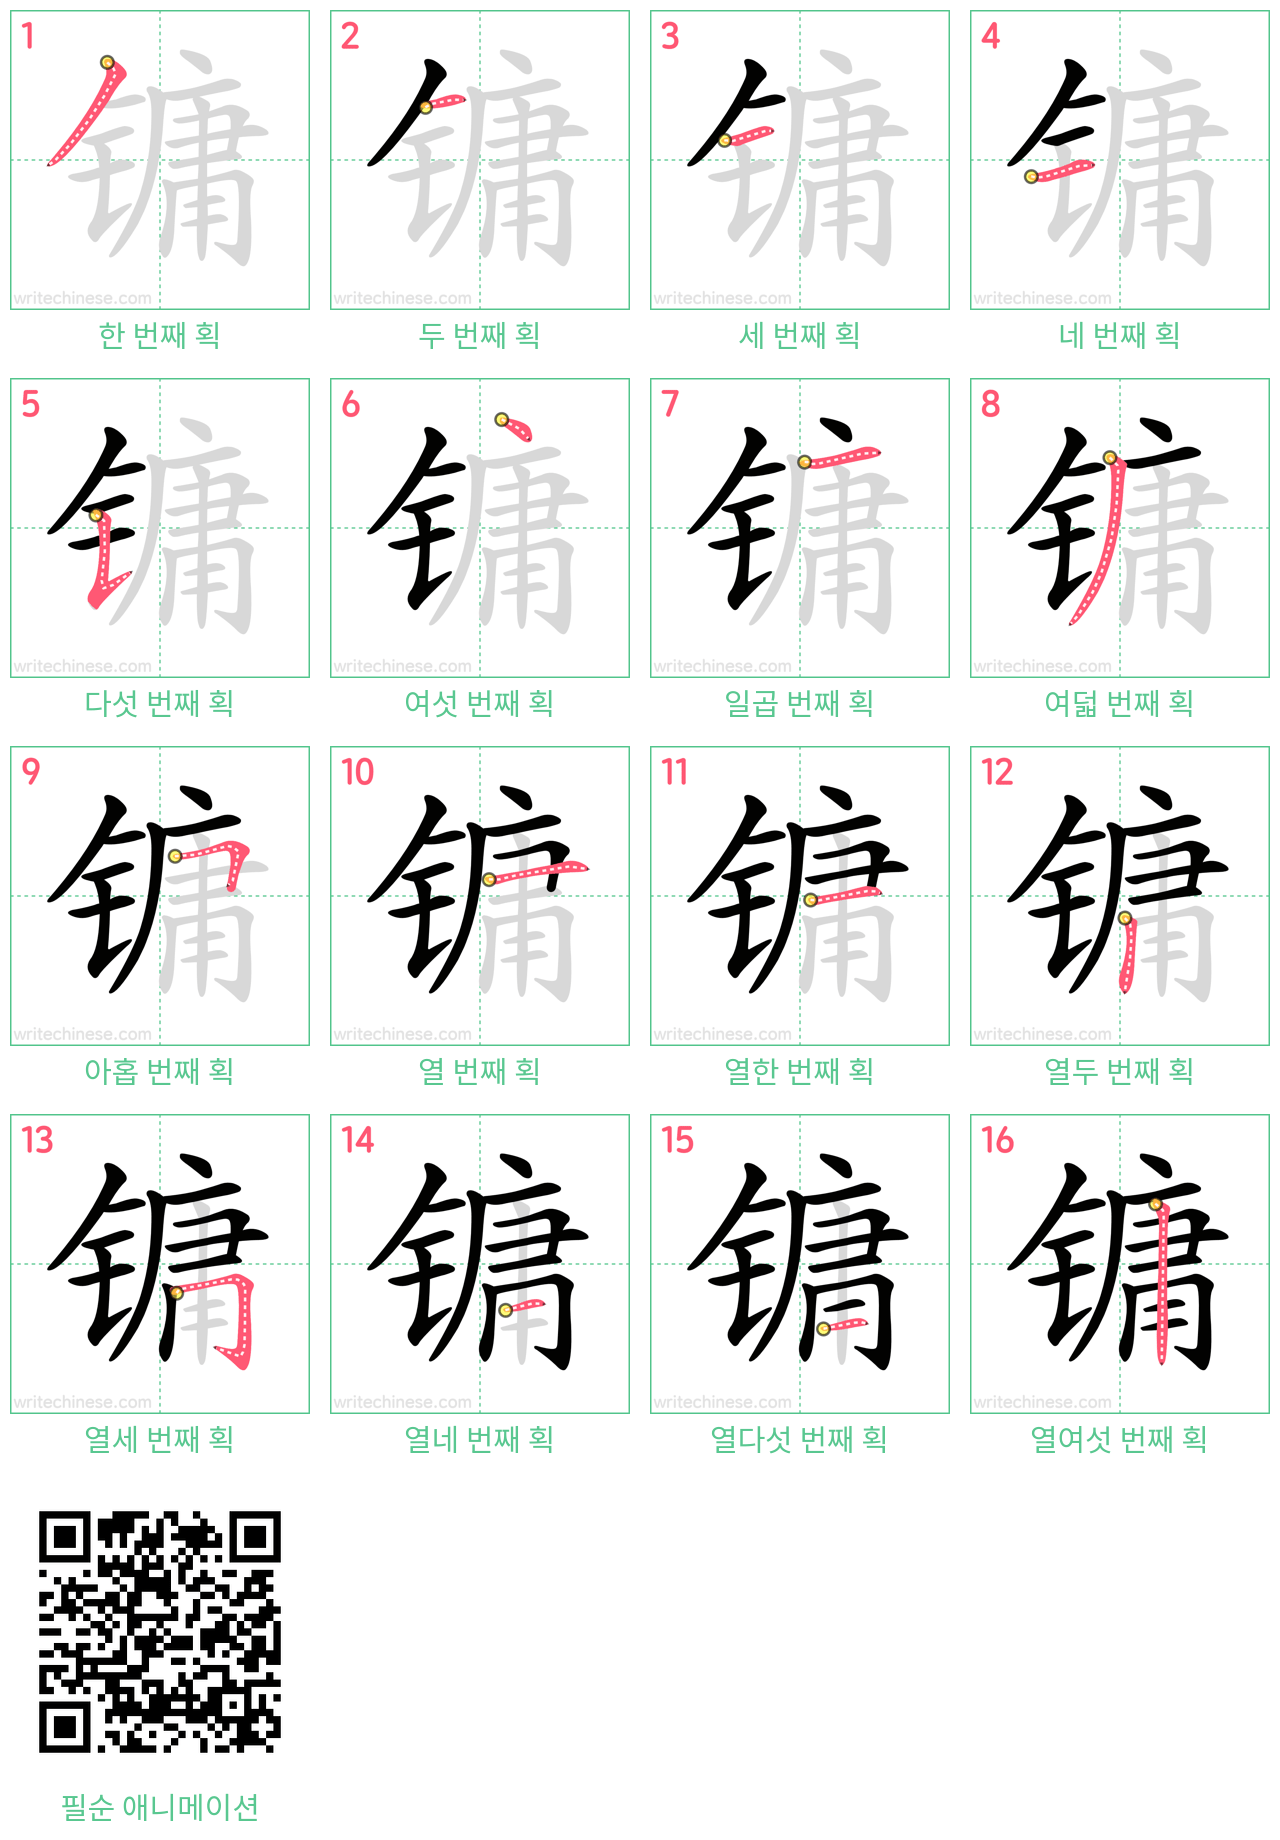 镛 step-by-step stroke order diagrams